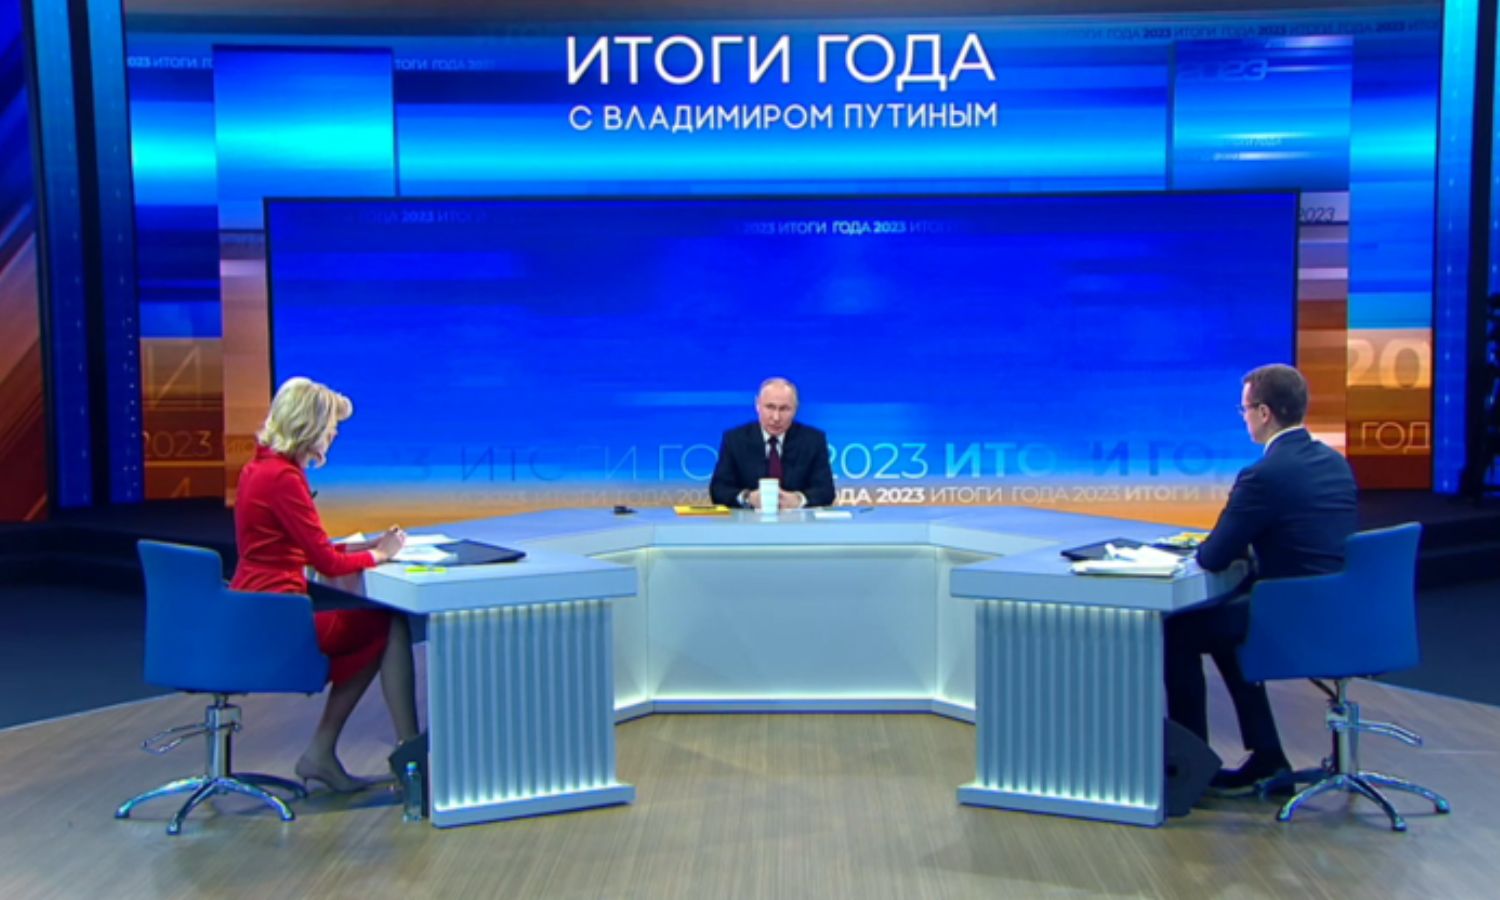 الرئيس الروسي فلاديمير بوتين خلال لقاء تلفزيوني- 14 من كانون الأول 2023 (روسيا اليوم)